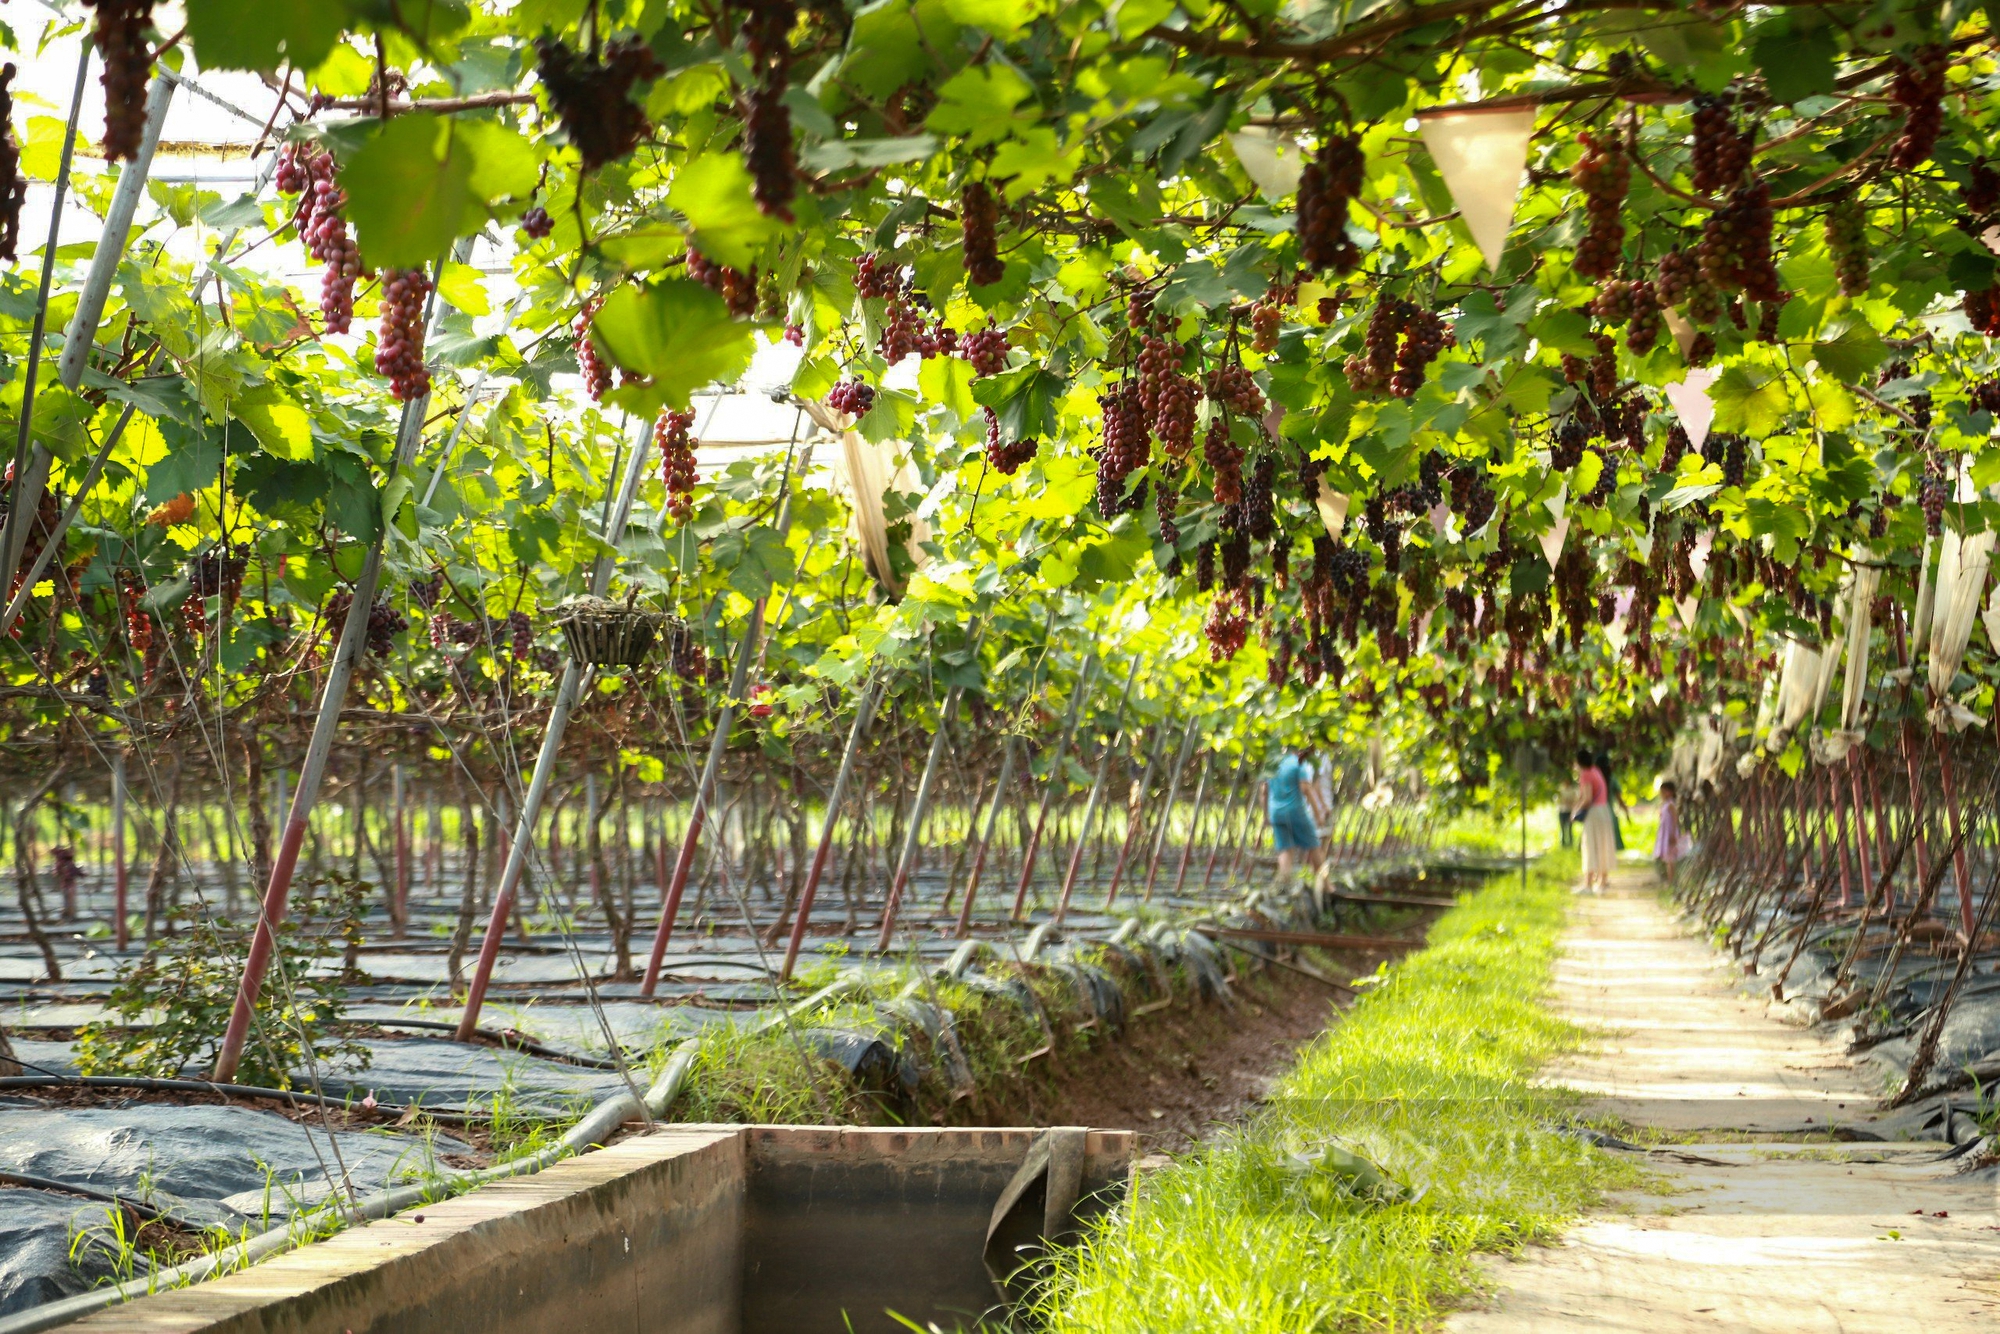 Vườn nho hạ đen trĩu quả ở ngoại thành Hà Nội thu hút người dân đến check-in mỗi ngày- Ảnh 4.